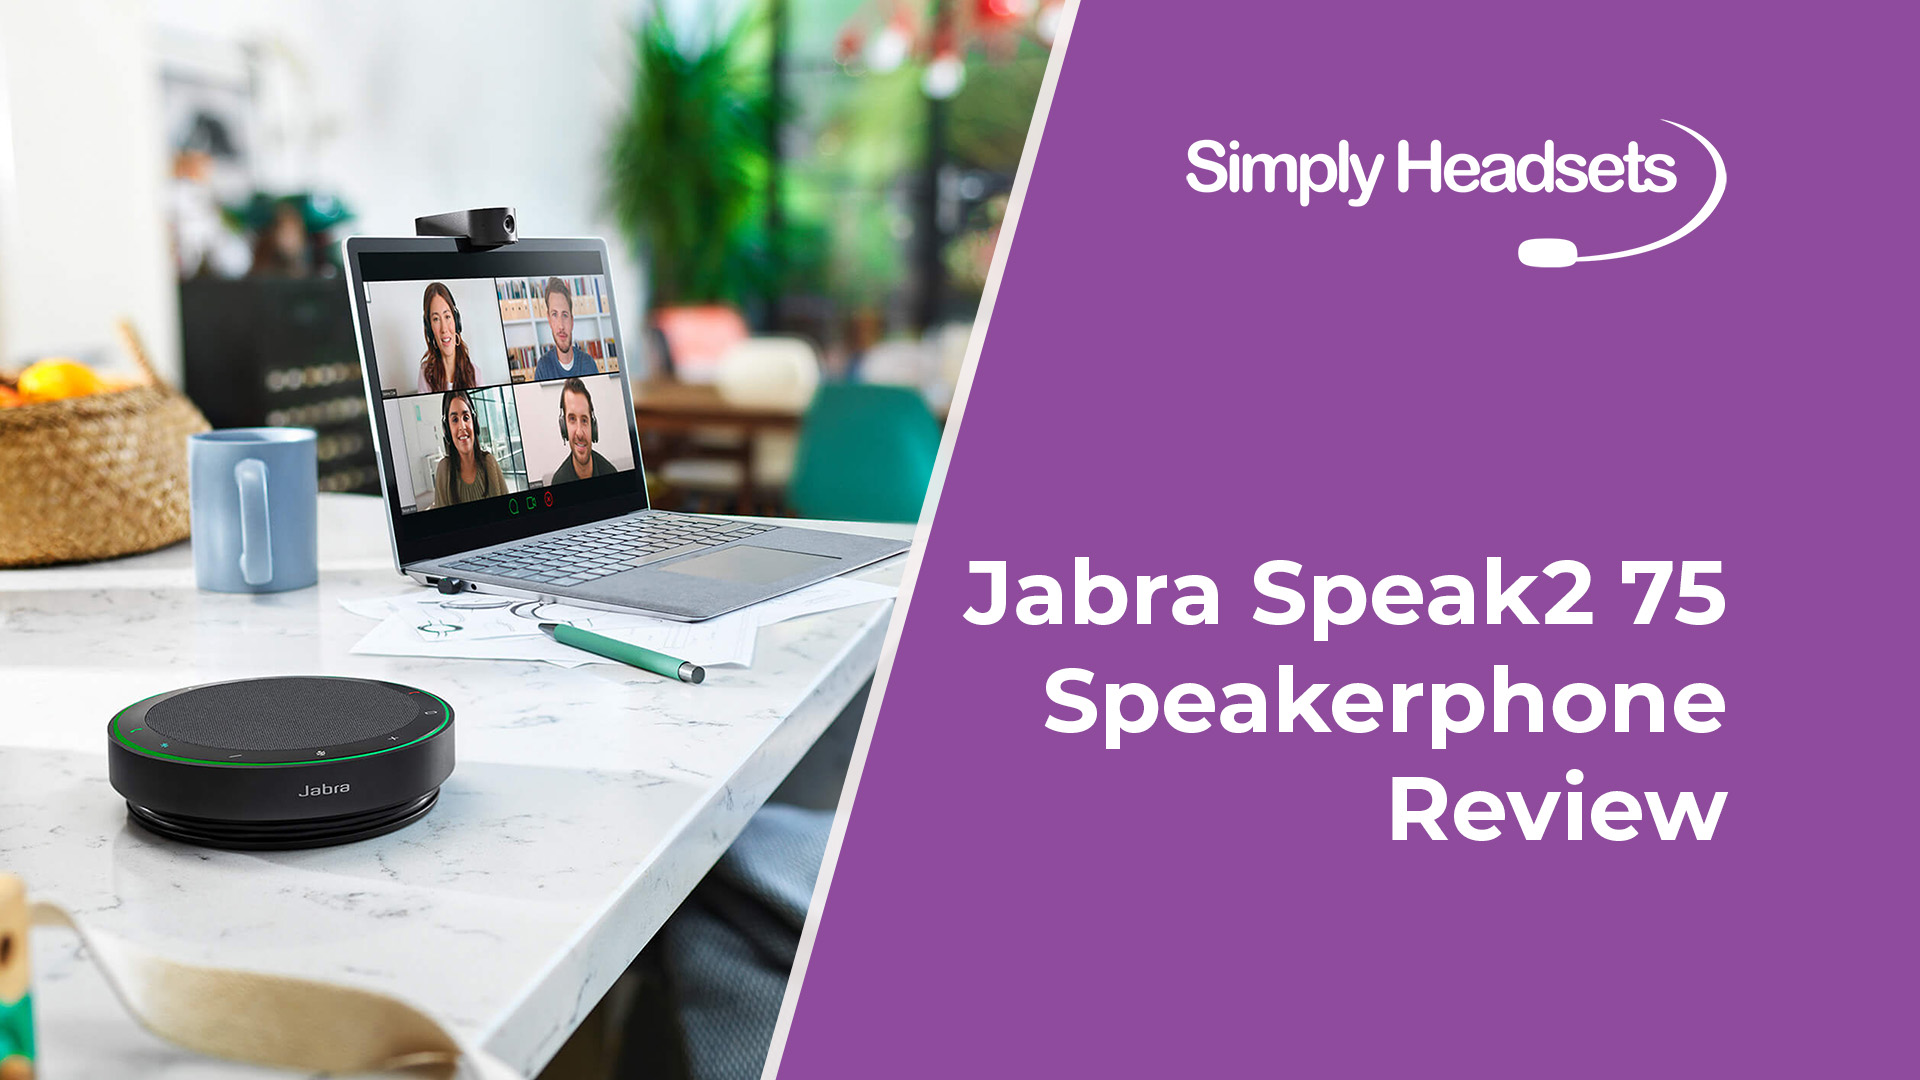 Jabra Speak2 75 Speakerphone Review | Simply Headsets